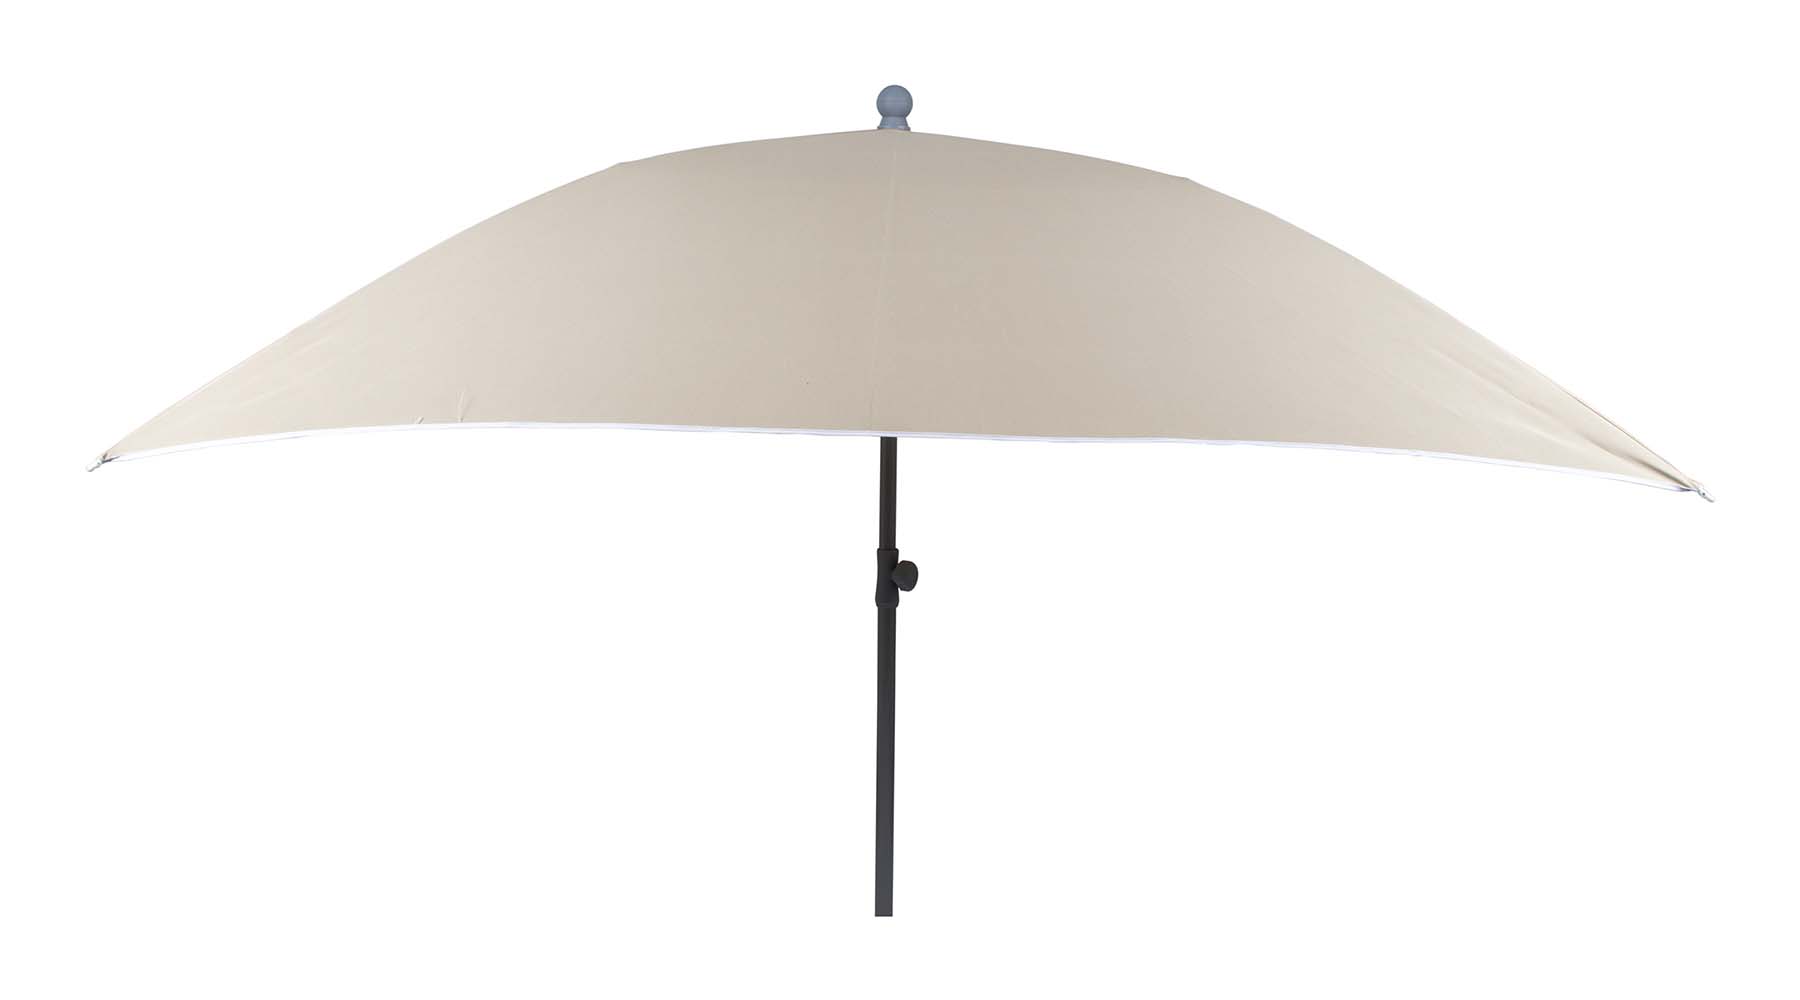 7267294 Een stevige vierkante parasol. Inclusief in hoogte verstelbare stalen steel voor in het zand, in een parasolvoet of in een tafelopening. Ideaal voor op het strand, op de camping of in de tuin. Voorzien van een stevig 160 gr/m² polyester doek. Bovendien zeer gemakkelijk mee te nemen (Ø 17x100 cm). De steel van de parasol heeft een diameter van 32 millimeter.